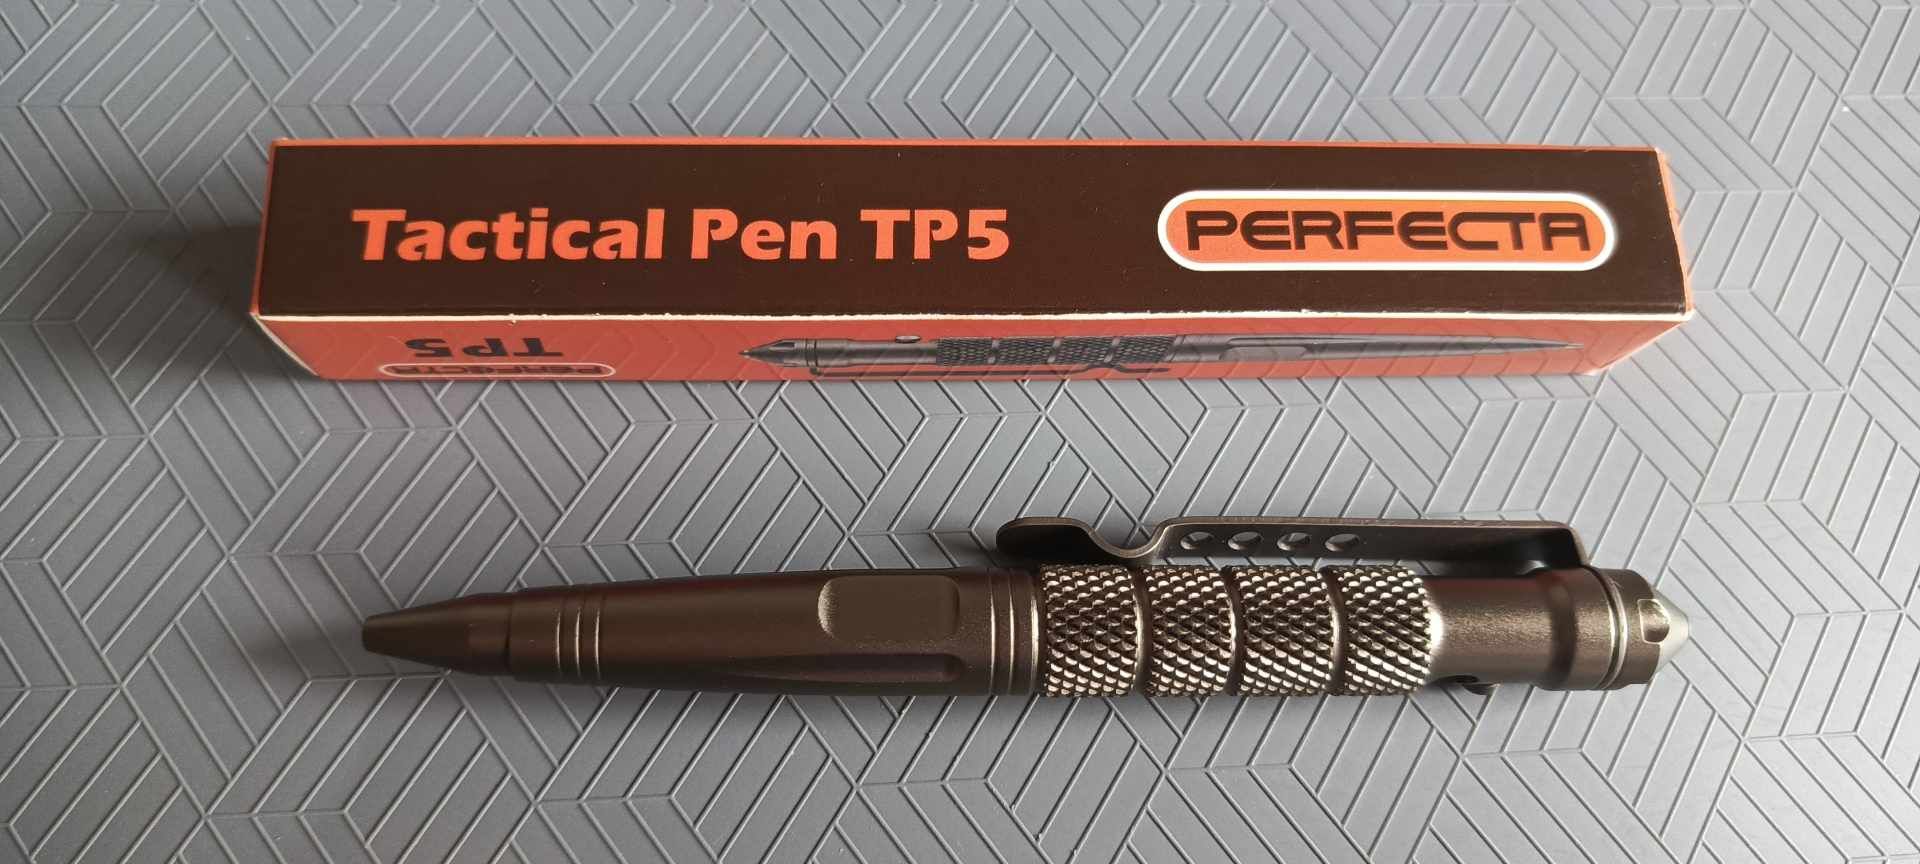 Długopis taktyczny Perfecta TP5 NOWY